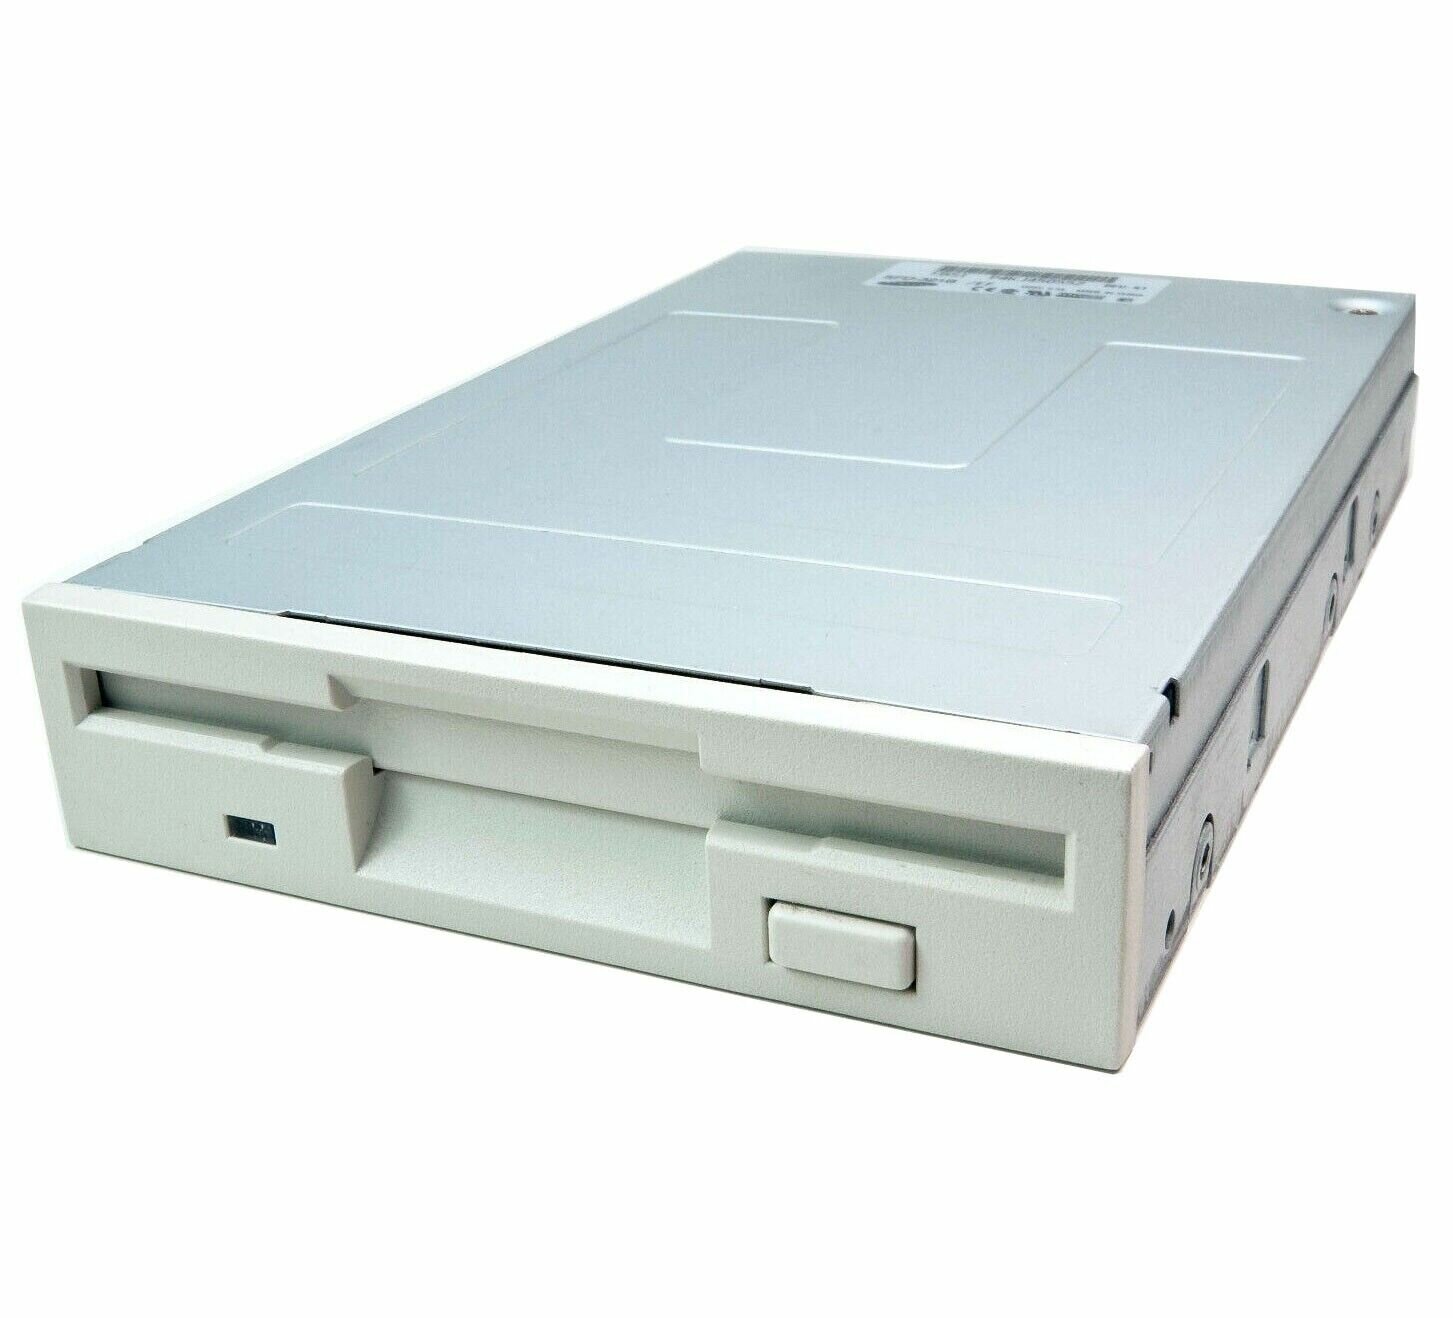 Привод / Floppy дисковод для дискет FDD 3.5 дюйма Белый / Желтый в ассортименте